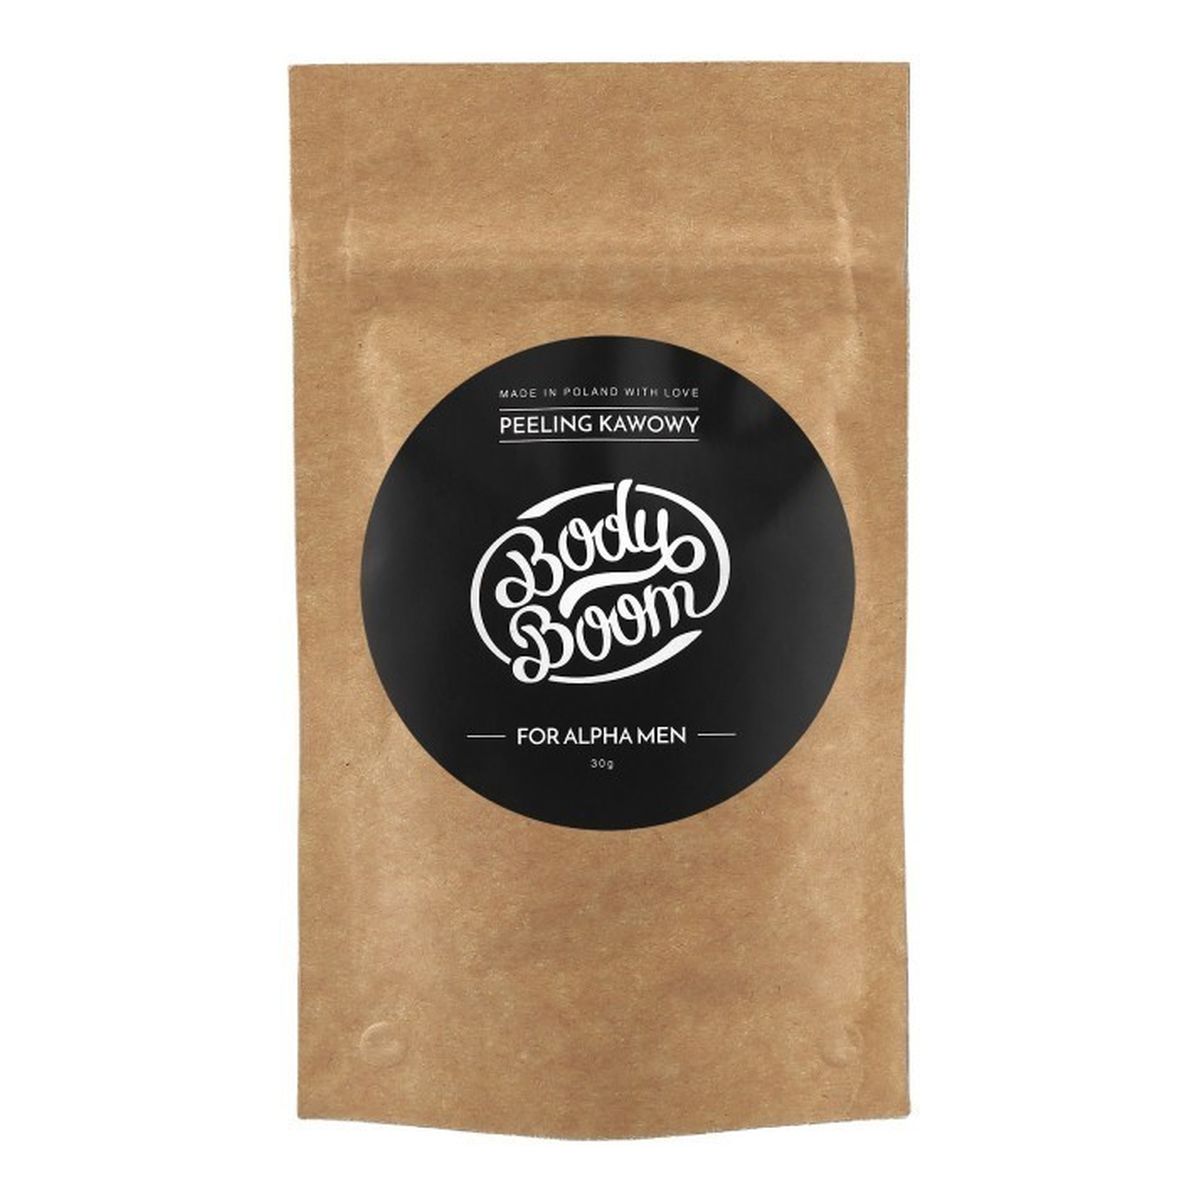 Body Boom Coffee Scrub Peeling kawowy For Alpha Men 30g